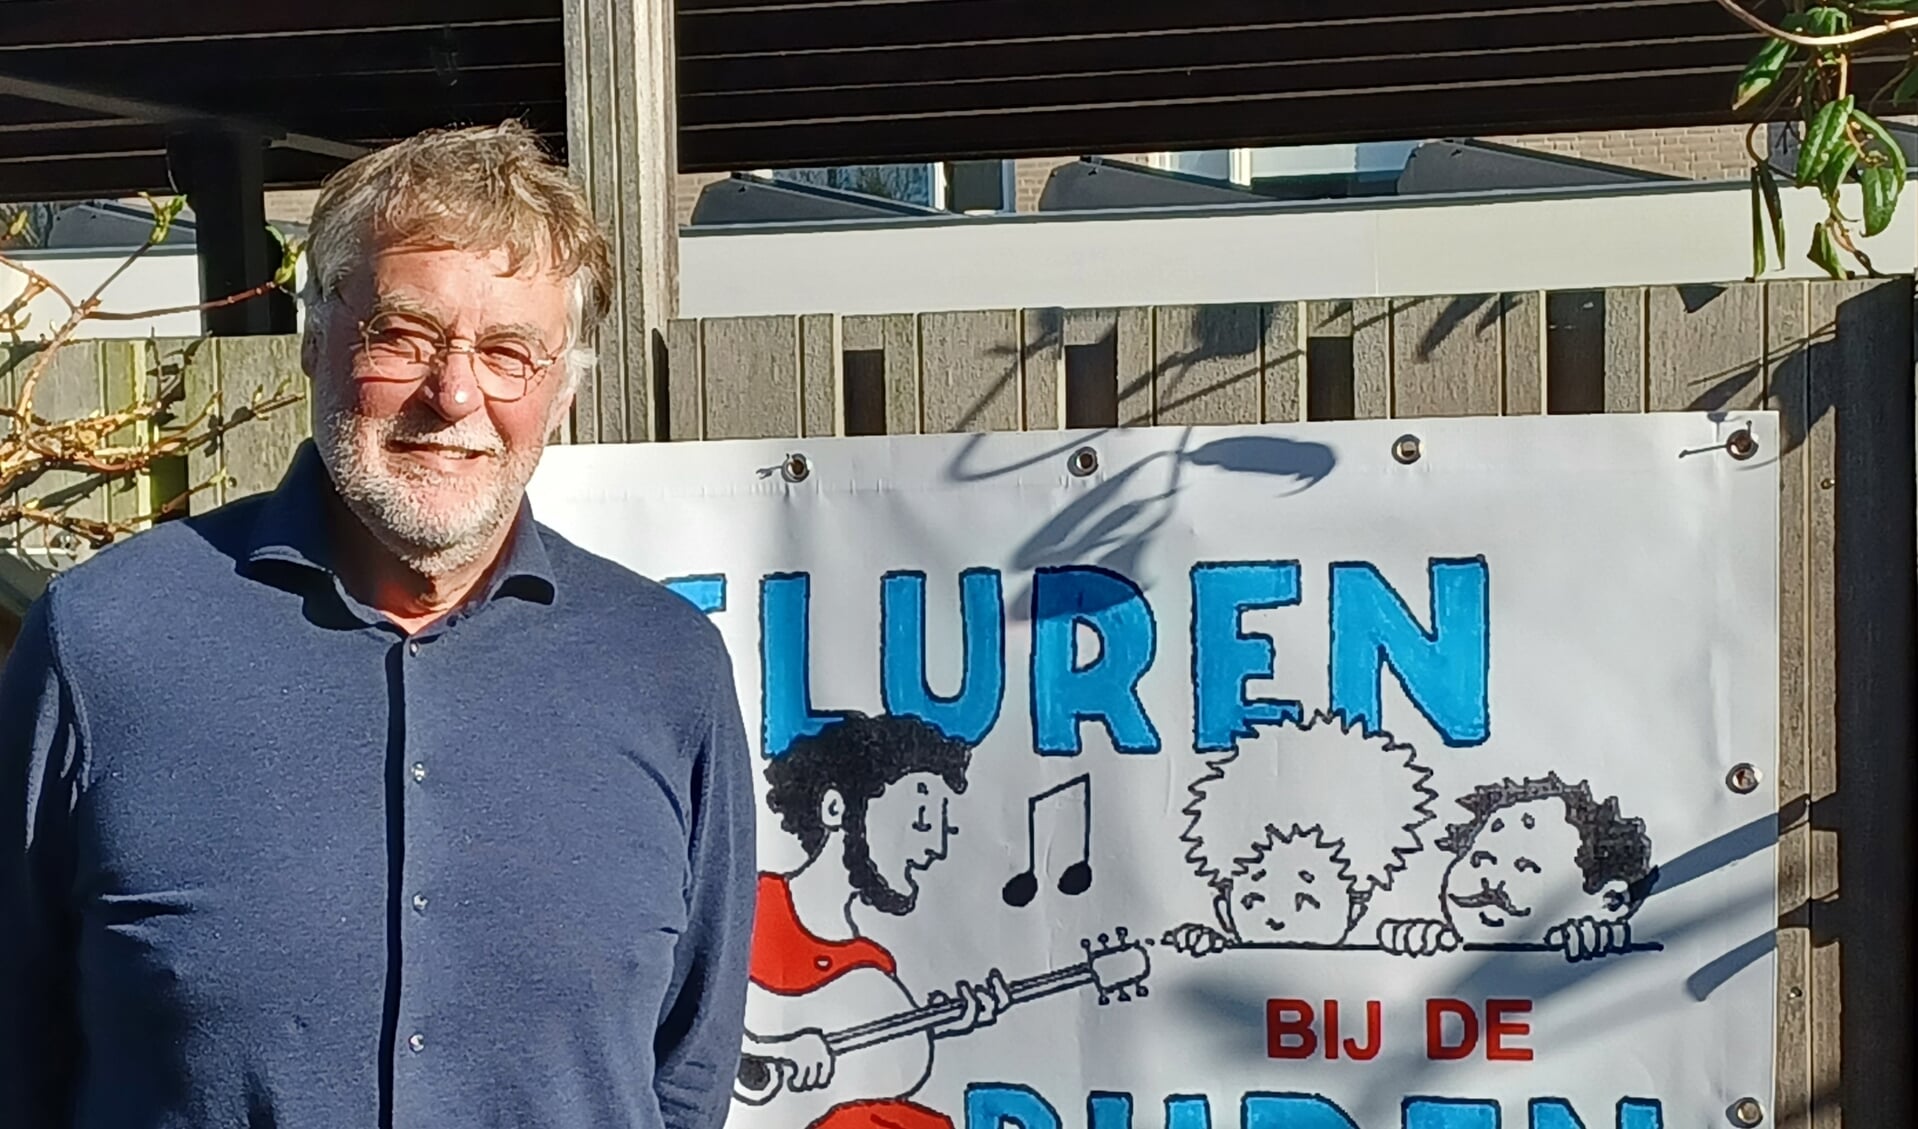 Pieter Broersen kijkt uit naar de eerste editie van Gluren bij Buren waarbij hij voorzitter is. 